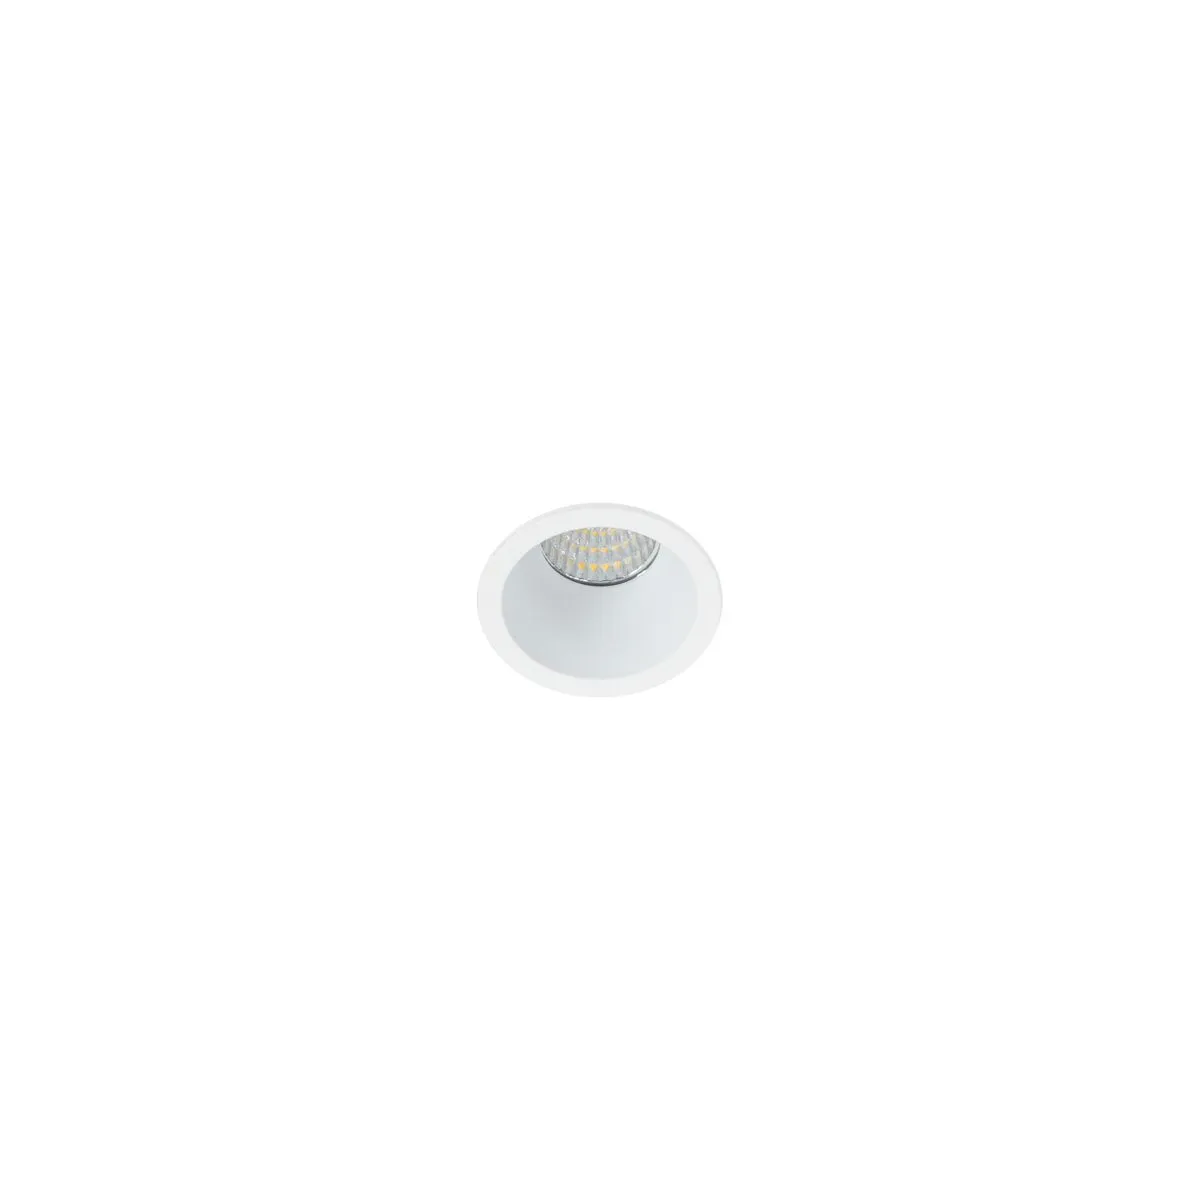 Lupo XS, nowoczesna, biała oprawa sufitowa, wpuszczana, RCS-9818-40-5W-WH-SWK, LED